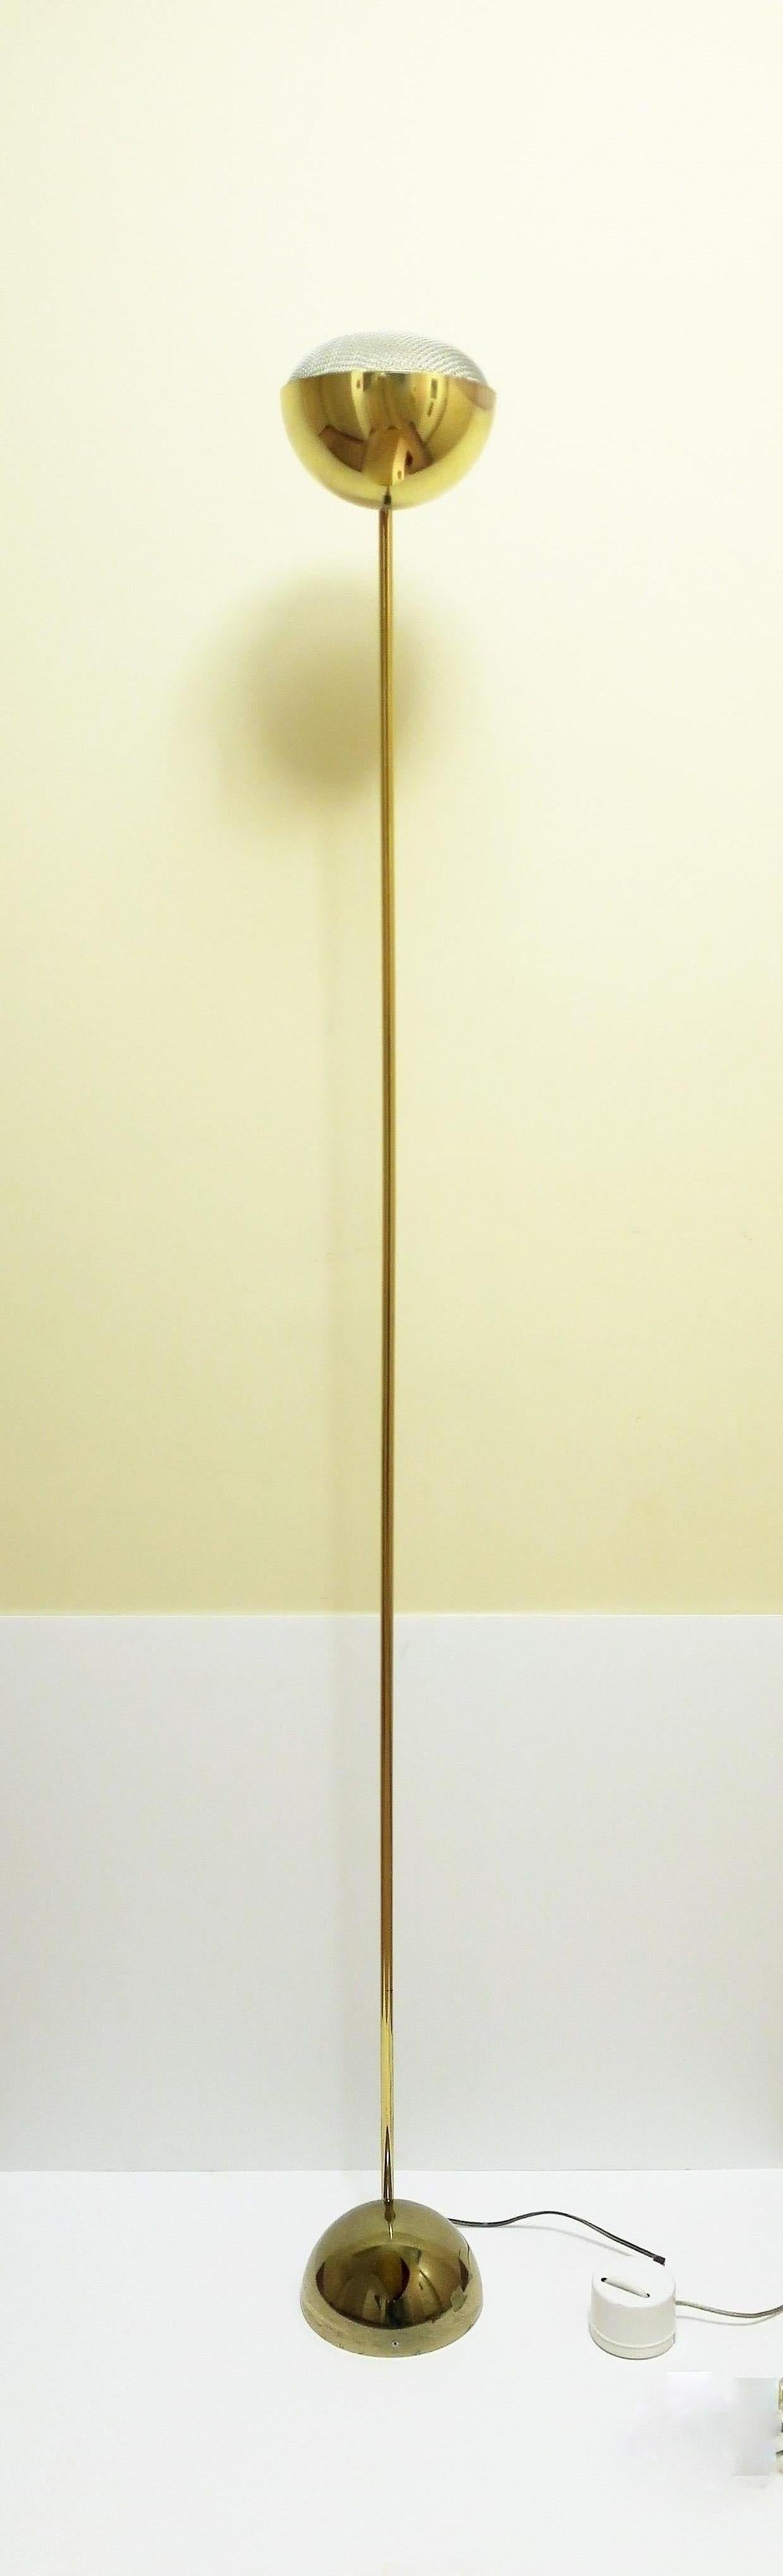 Postmoderne Stehlampe der 70er Jahre, vermessingt, ca. Ende der 70er Jahre, USA. Ein/Aus-Schalter an der Unterseite mit Dimmer, der ein breites Spektrum an Licht von niedrig bis hell bietet. In Bild #12 in der Stellung 